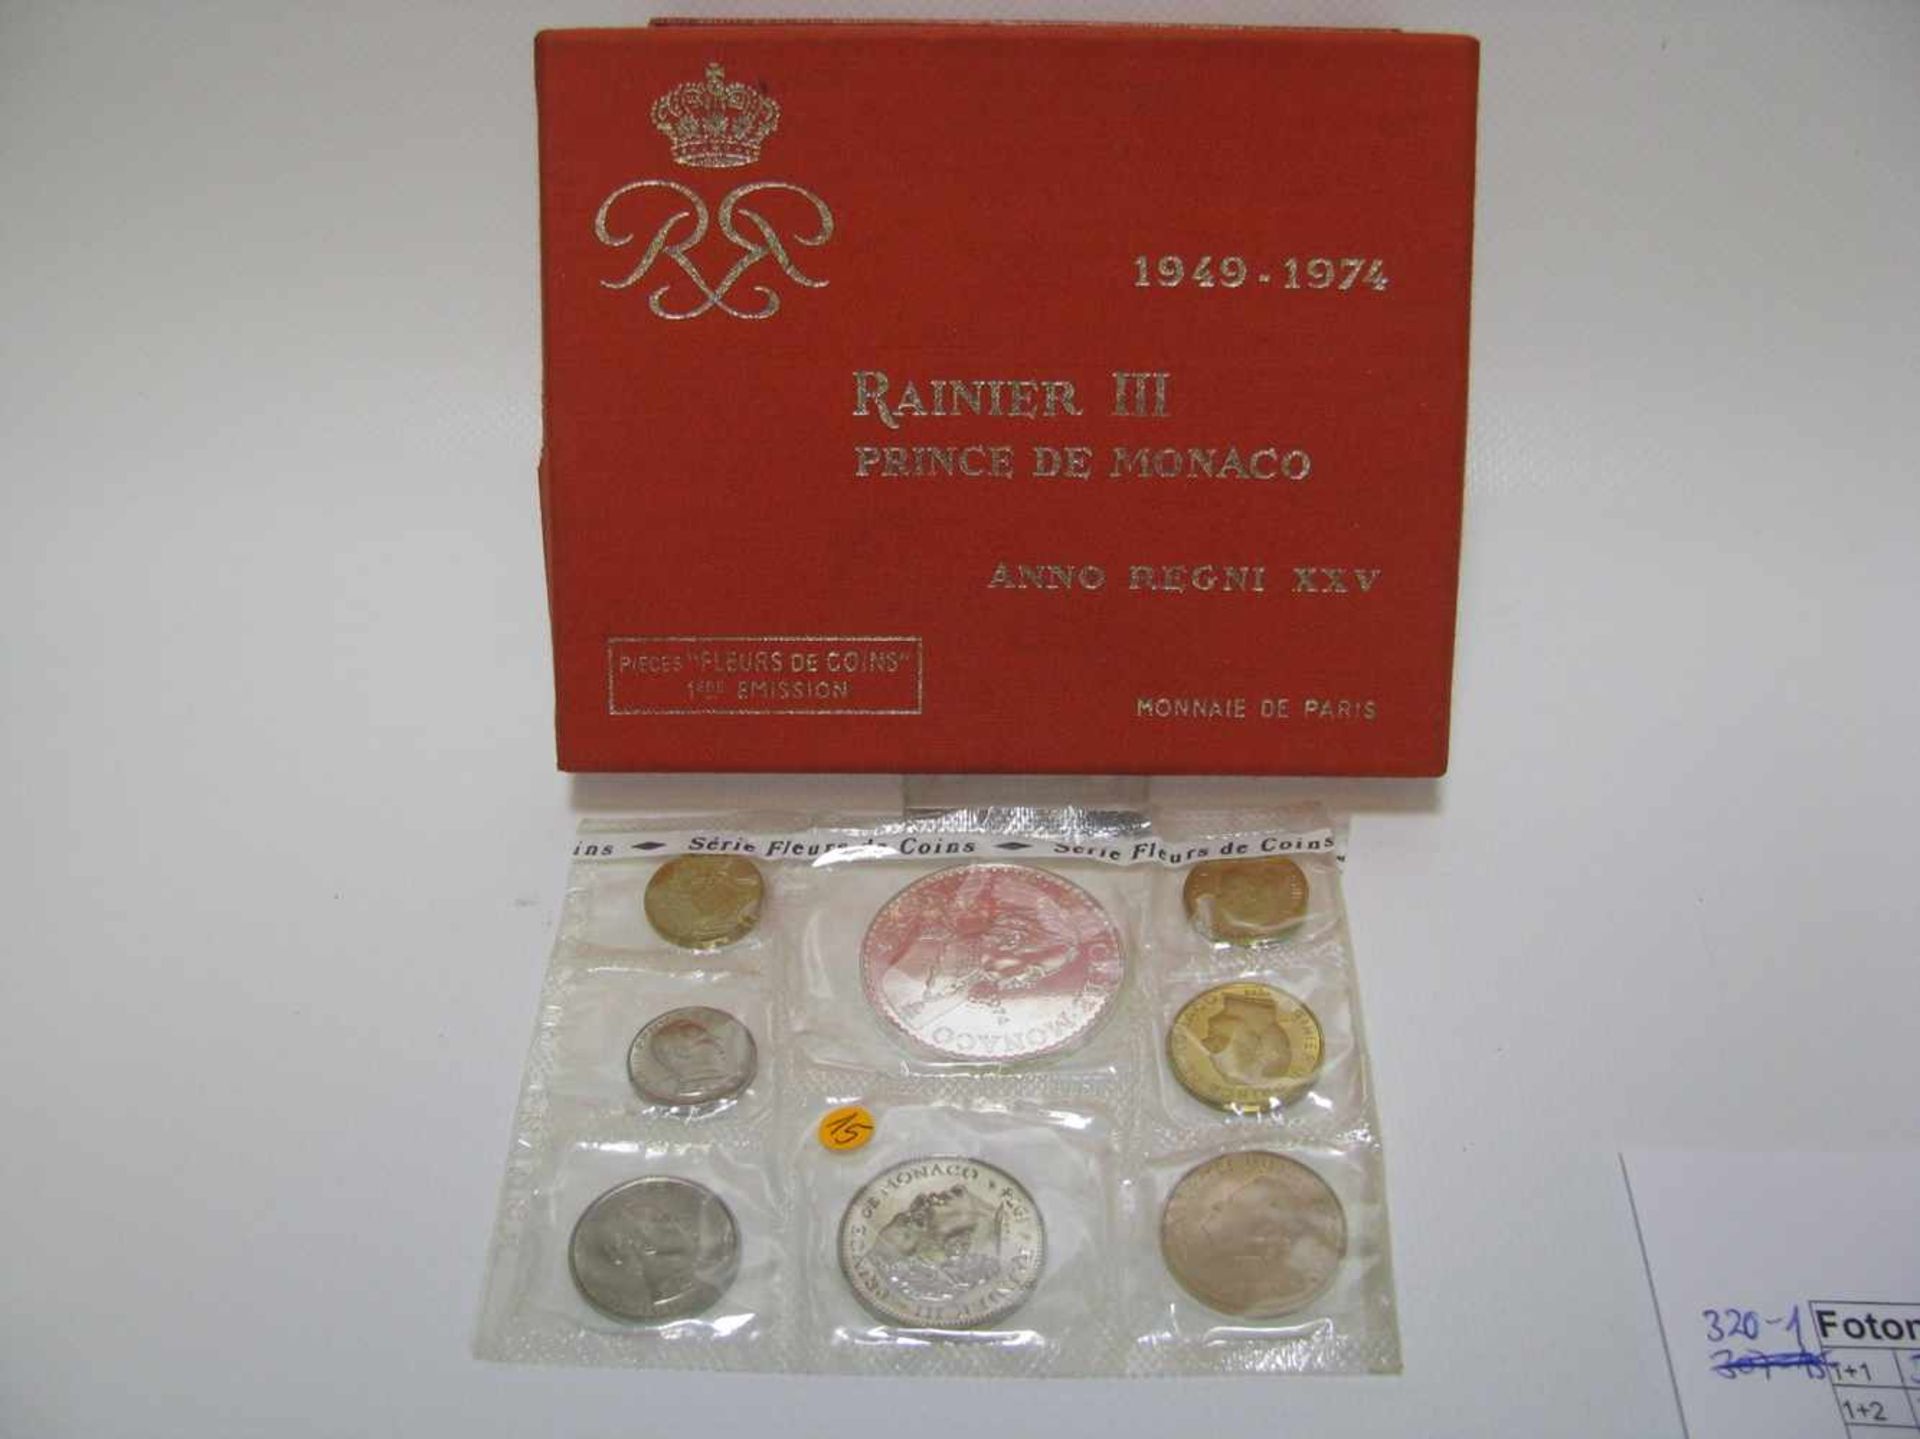 Münzsatz mit 8 Münzen, Rainier III. Fürst von Monaco, 25-jähriges Jubiläum, 1949 - 1974, Erstauflage